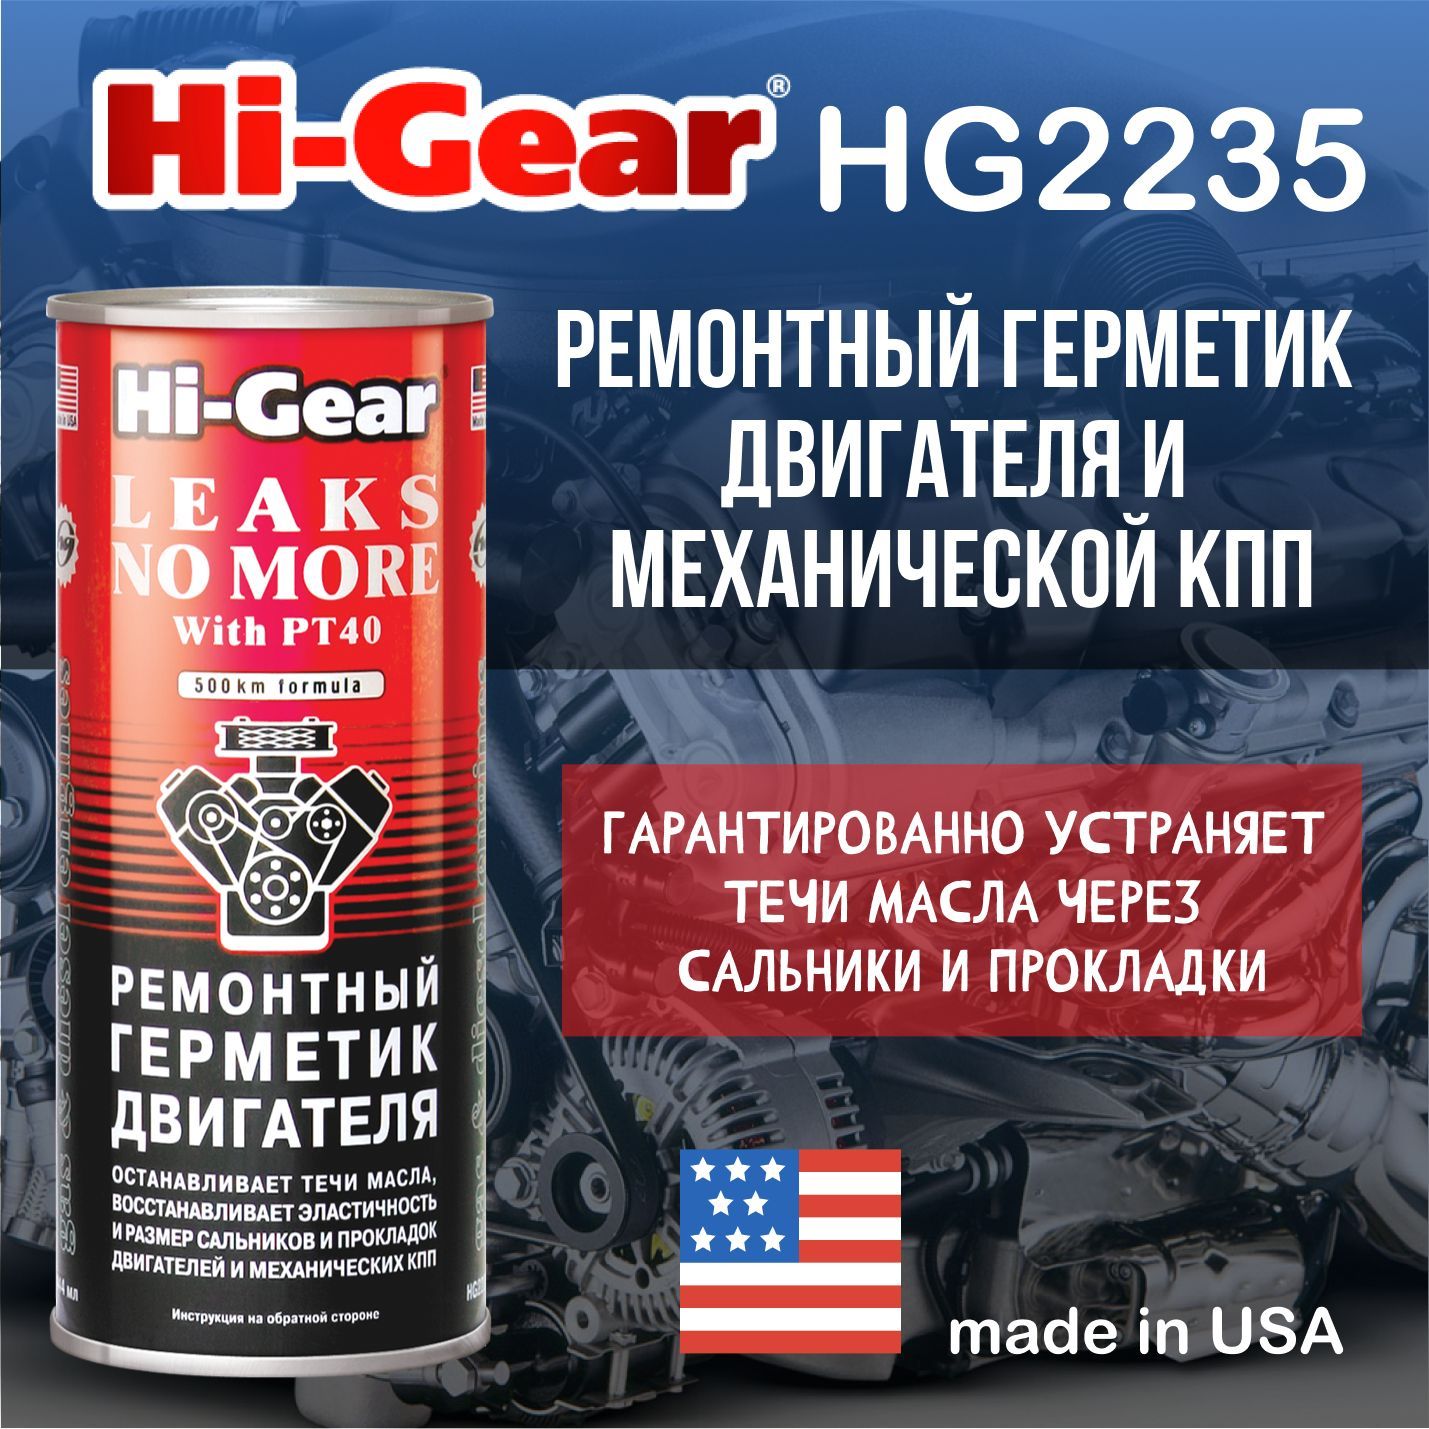 Ремонтный герметик. Ремонтный герметик двигателя Hi-Gear. Герметик масляной системы 444 мл (Hi-Gear) hg2235. Mg518герметик для двигателя. Хай Гир герметик для двигателя.